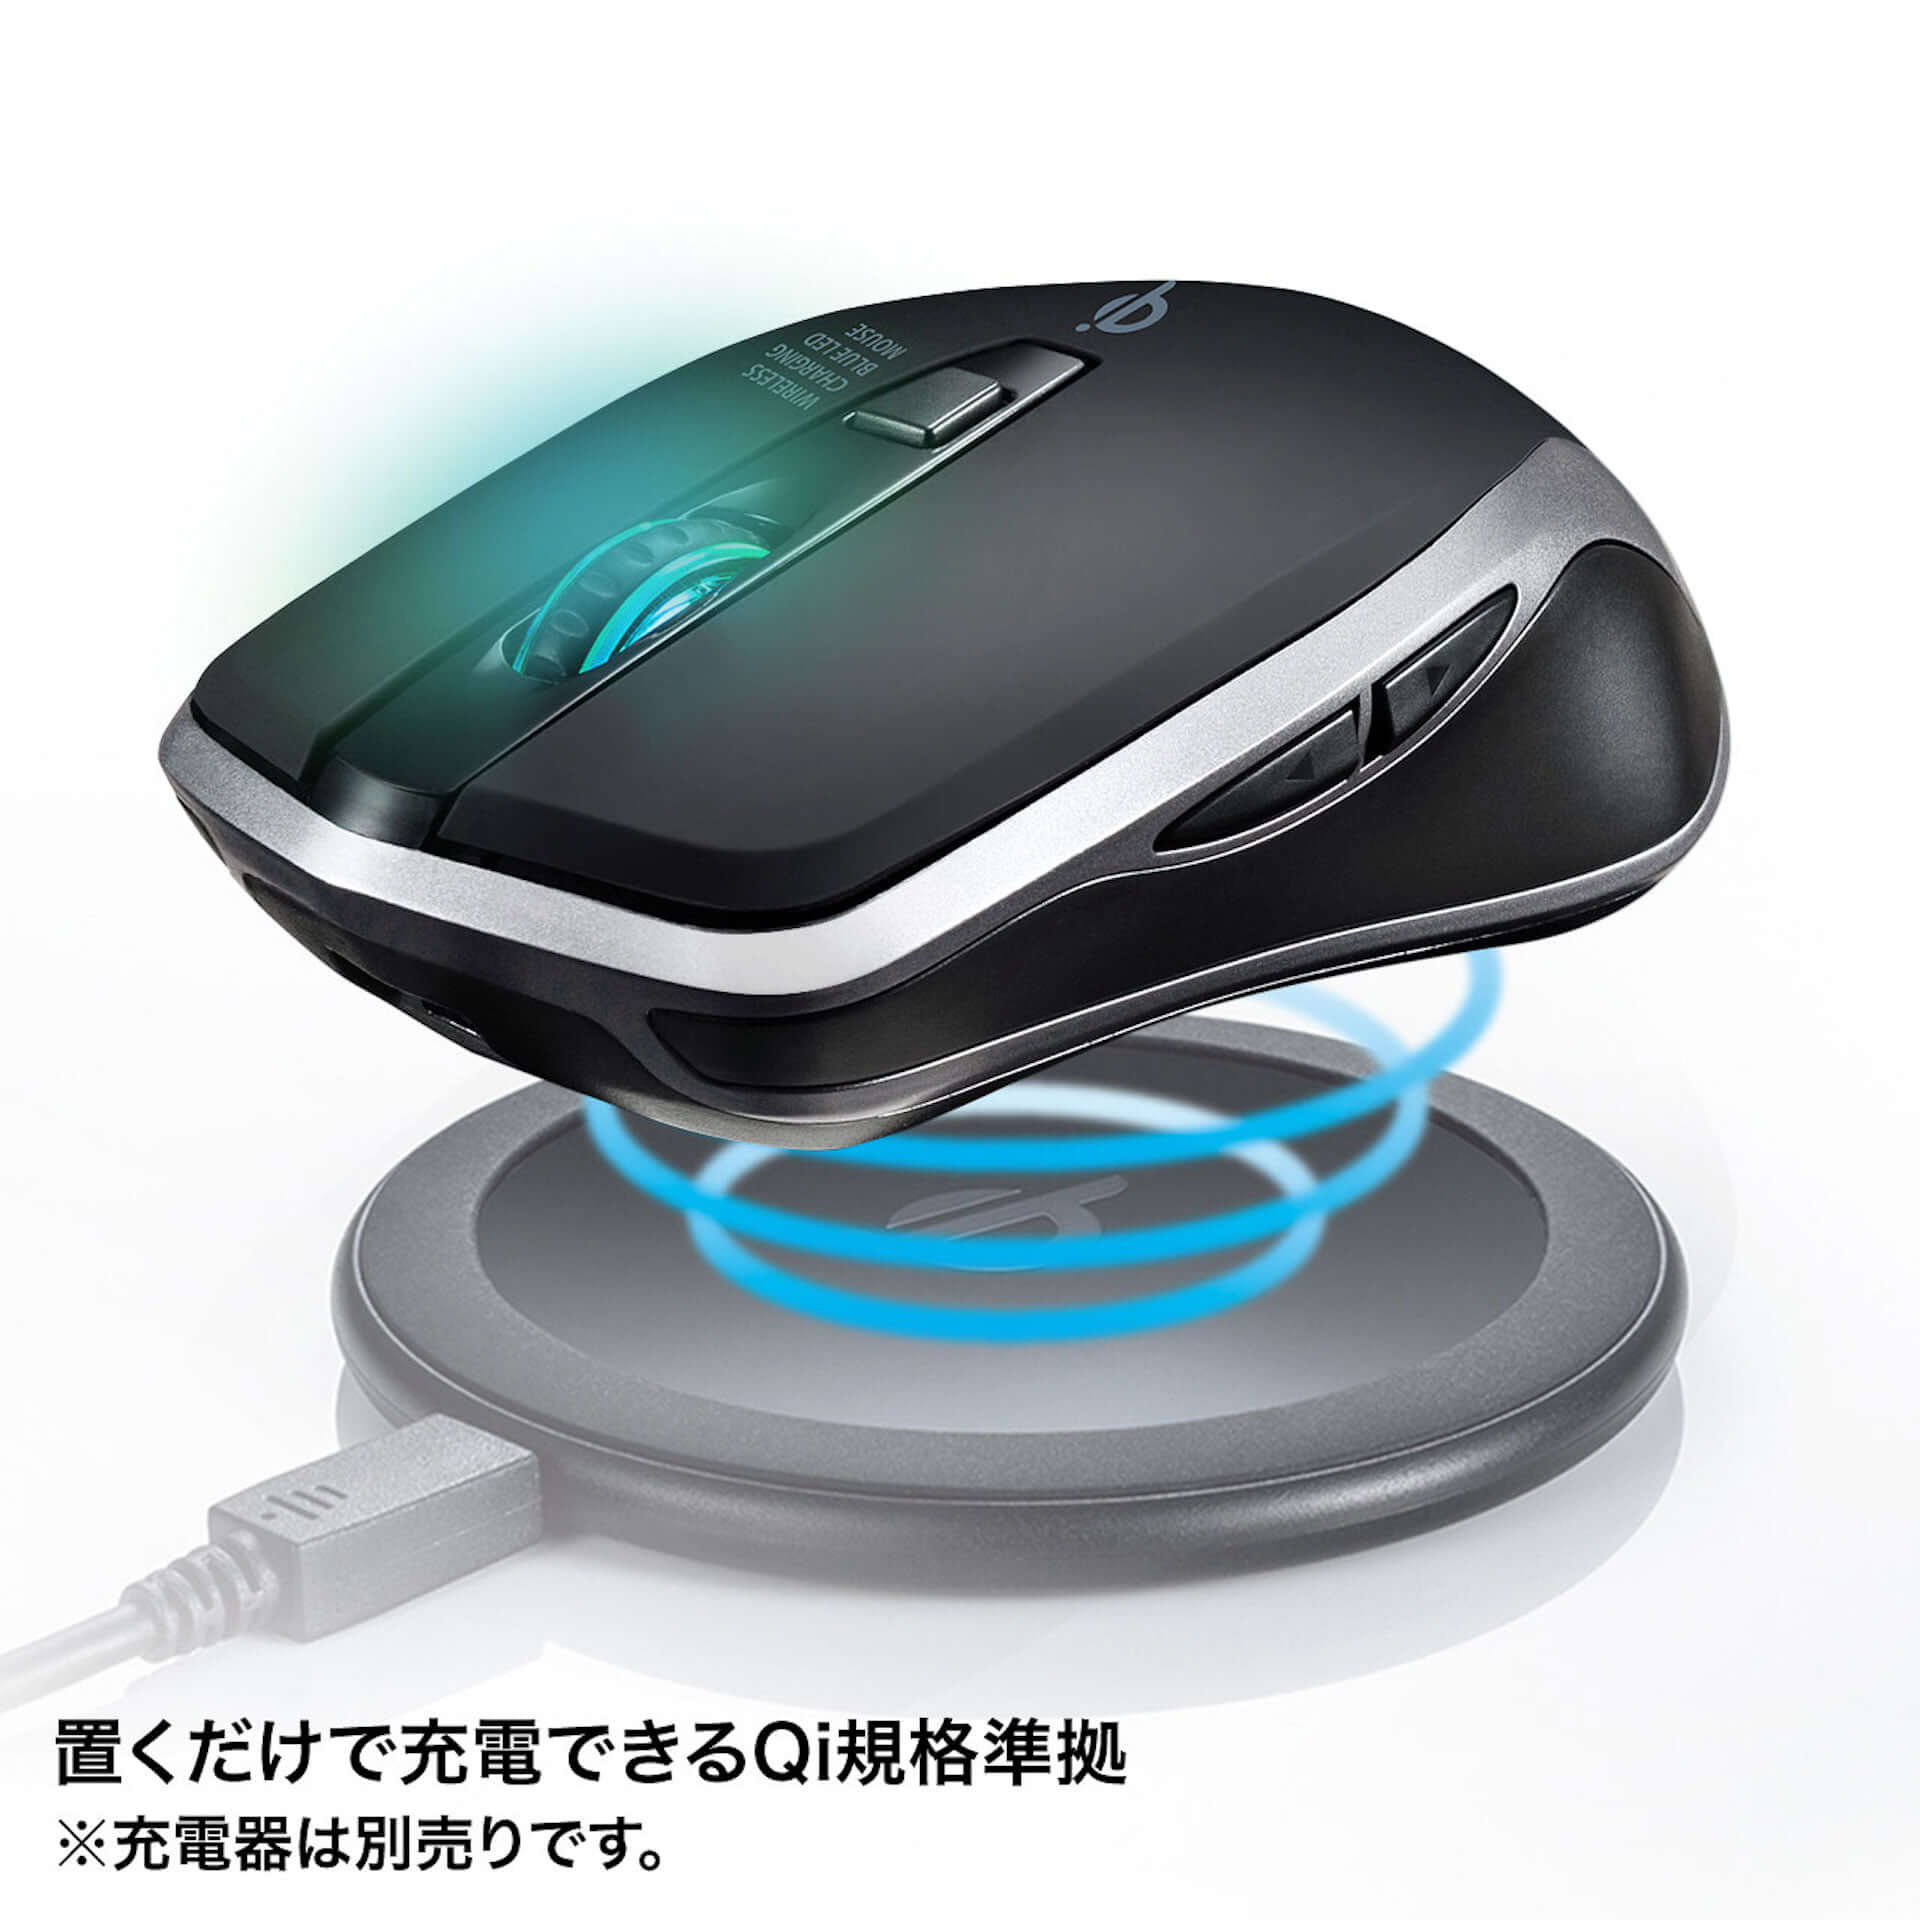 ワイヤレス充電でデスク環境をスマートに！Qi対応ワイヤレス充電機能付きマウスパッド＆LEDマウスが登場 | Qetic